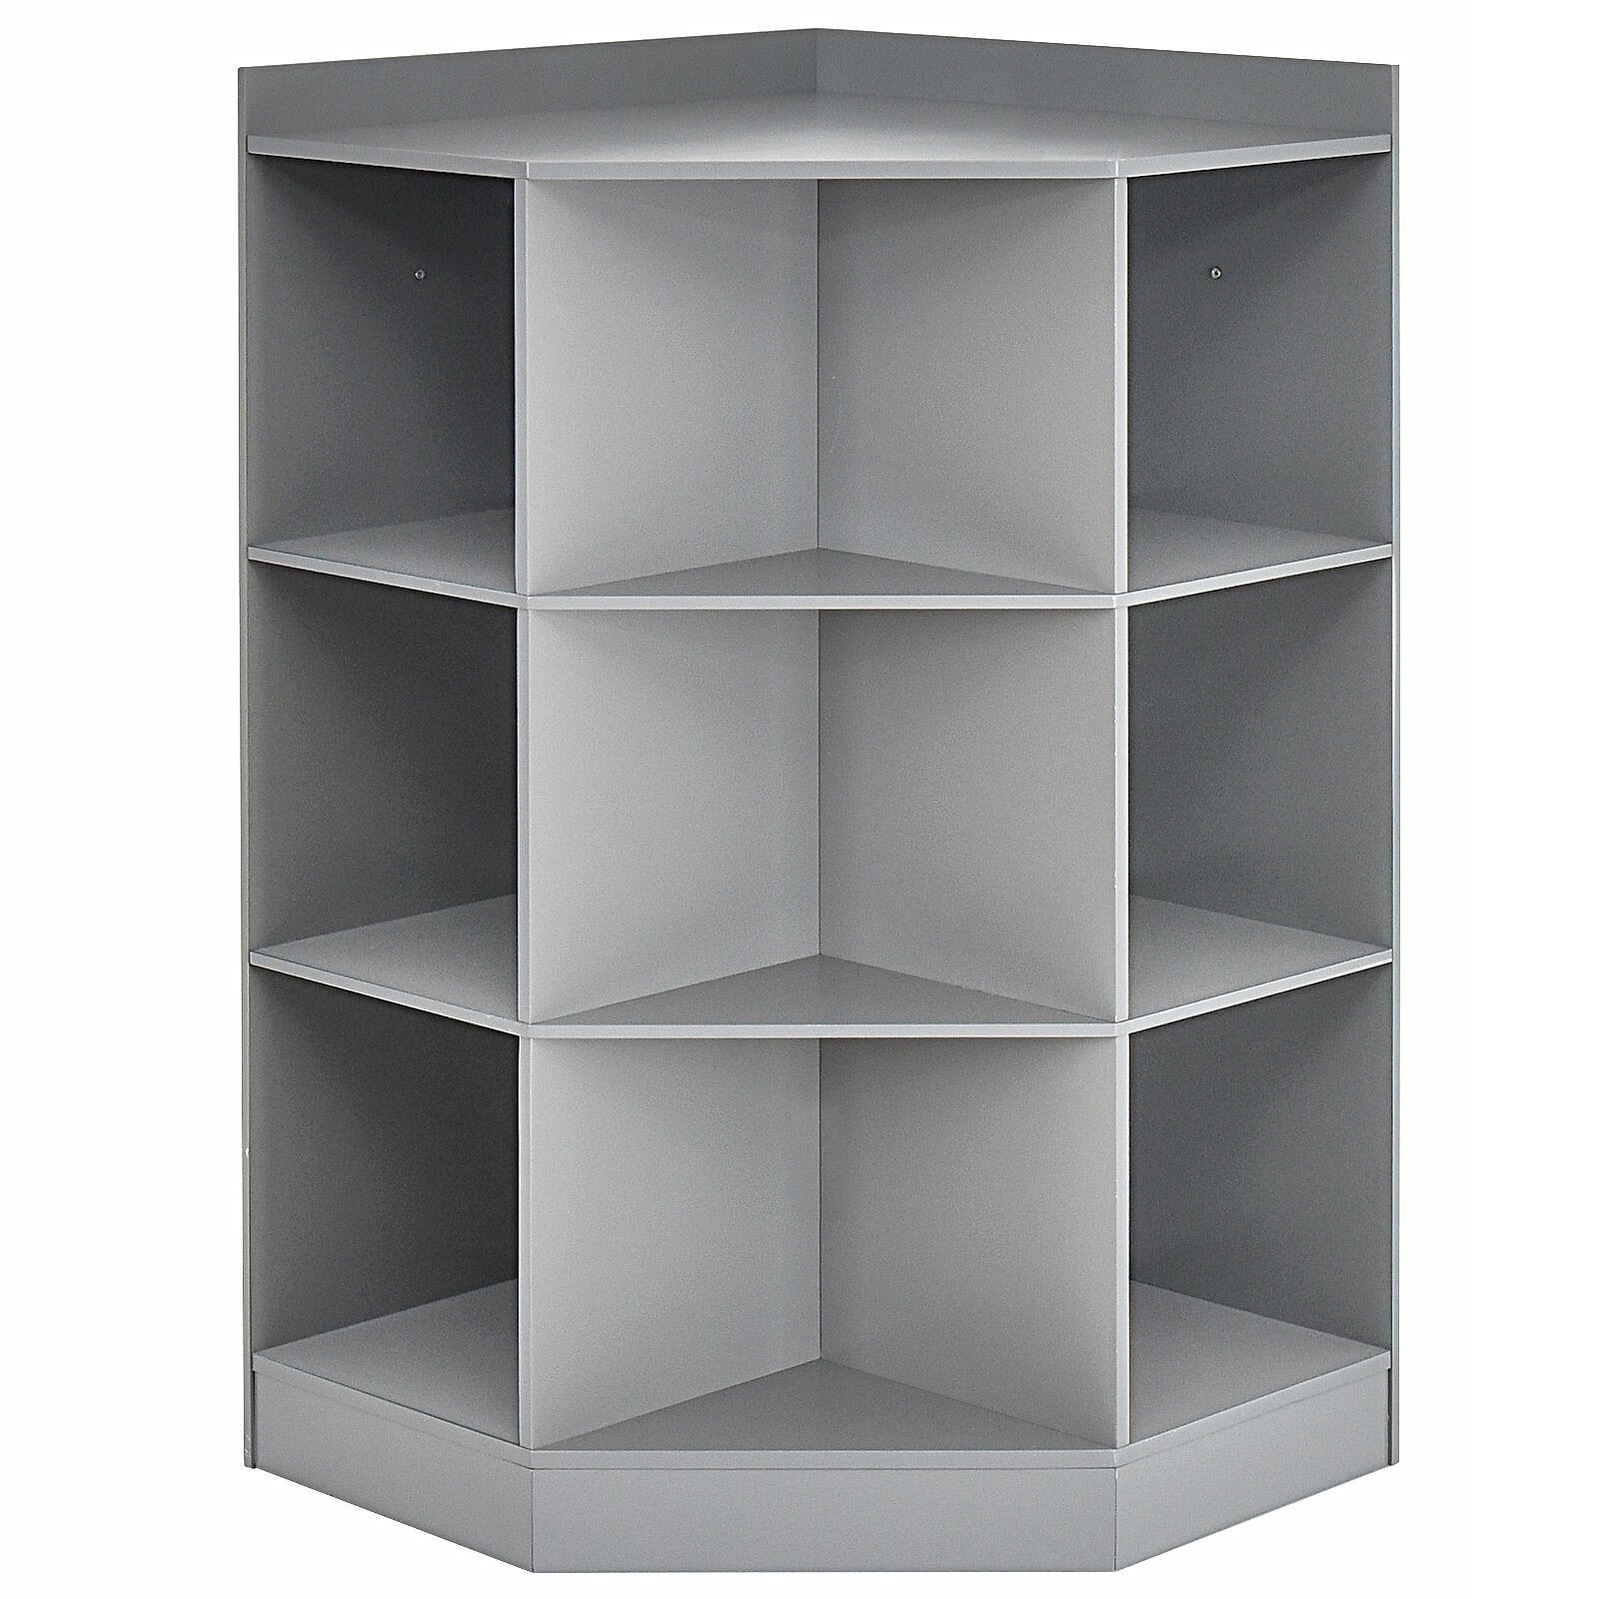 3-Tier Kids Storage Shelf Corner Cabinet with 3 Baskets White